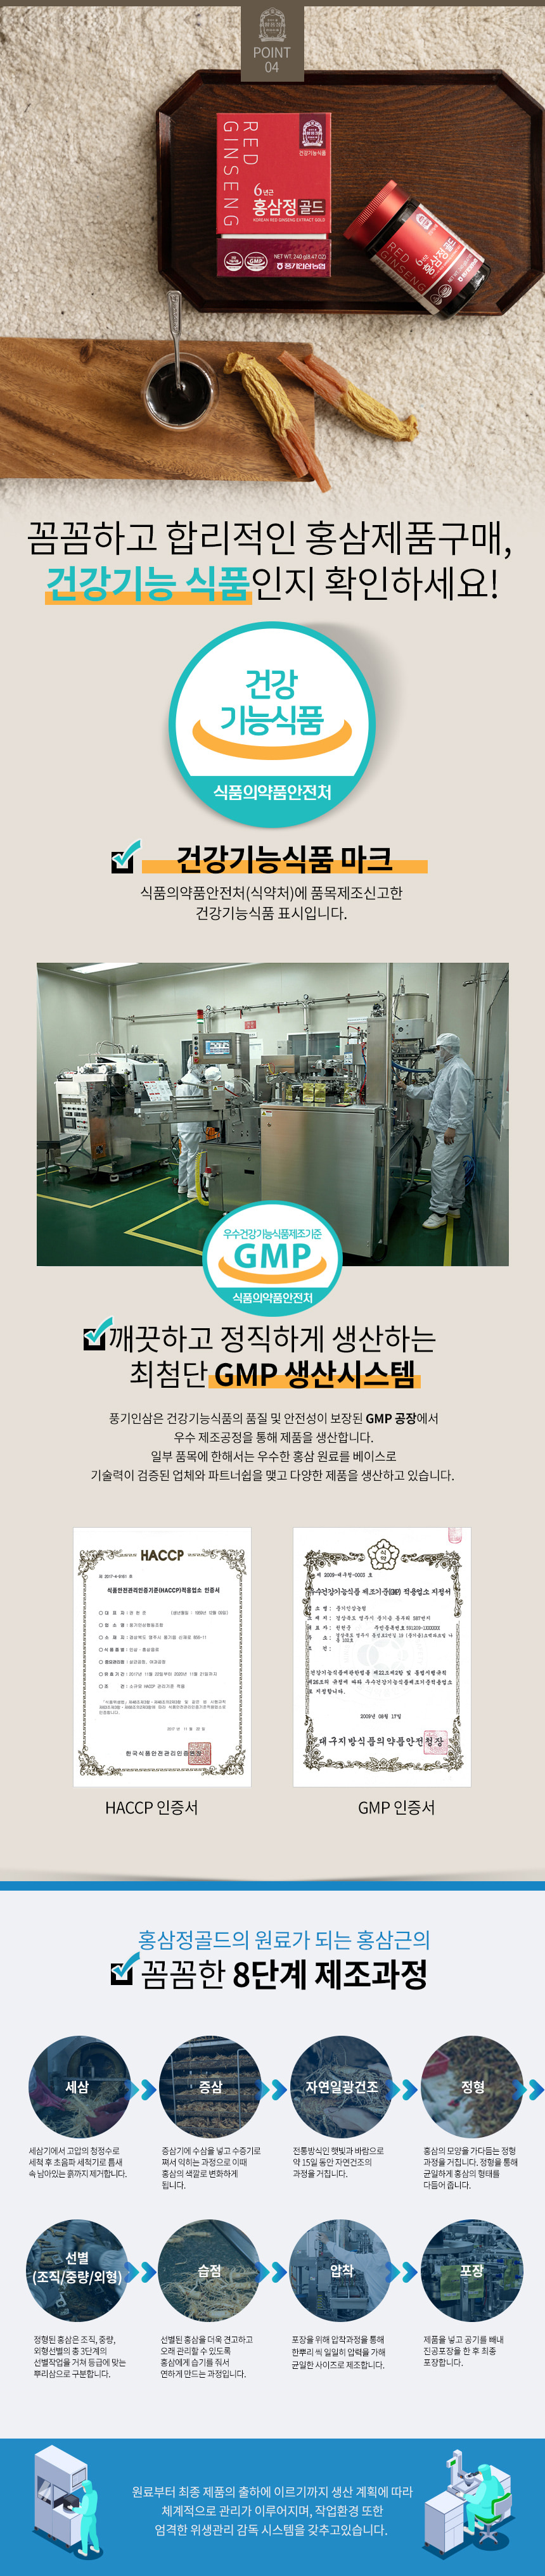 kpg_hsjeonggold_08_certificate.jpg